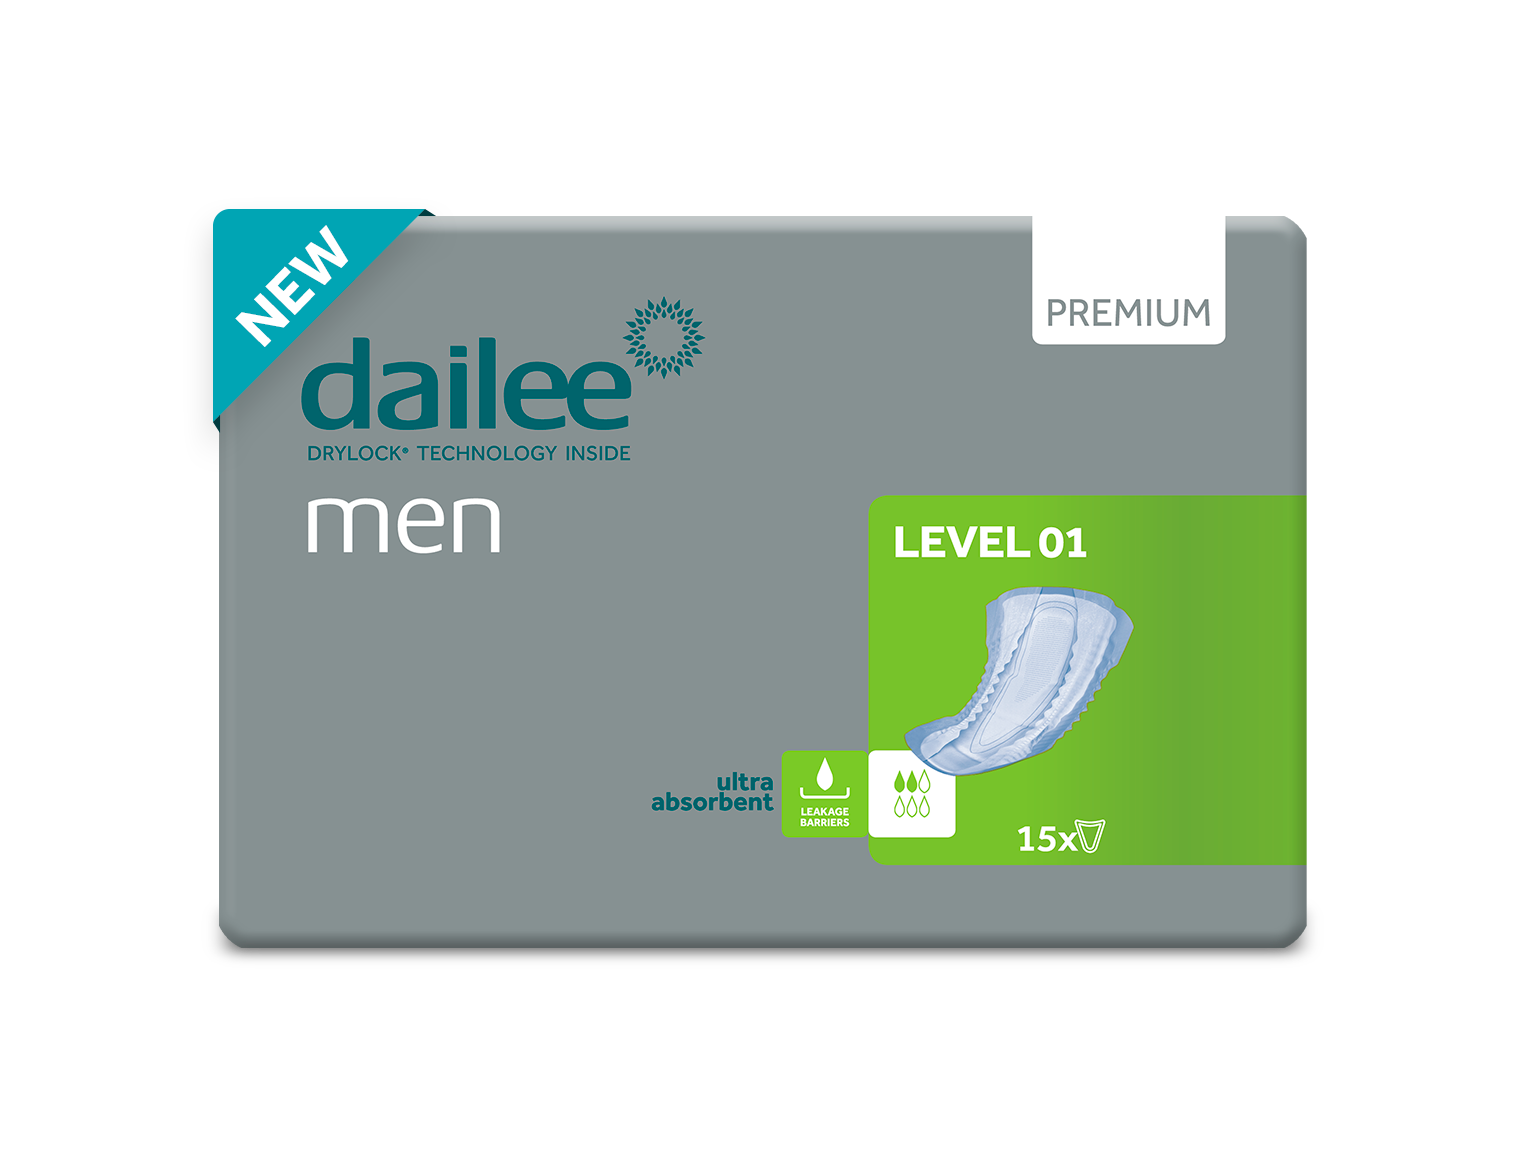 dailee_men_premium_level_1_product